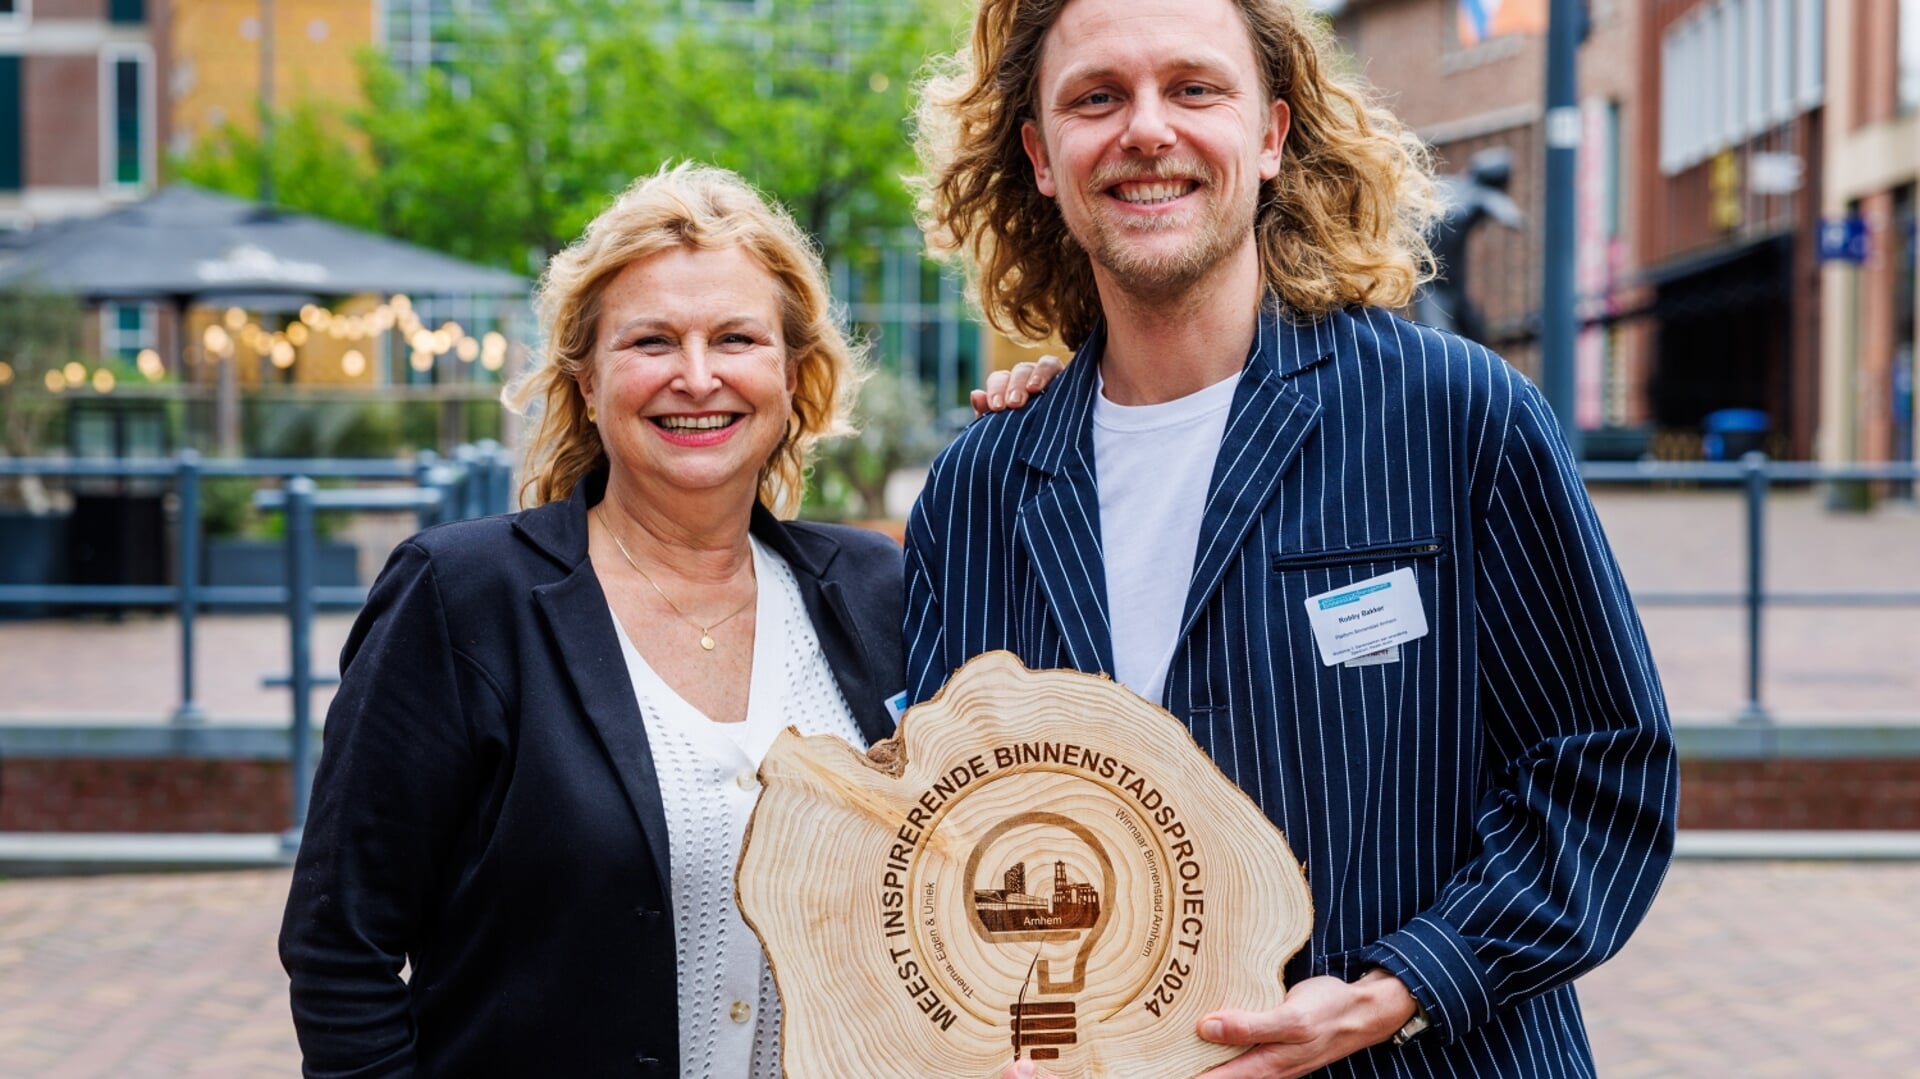 Marian van Hooij en Robby Bakker van Platform Binnenstad Arnhem tonen trots de prijs.